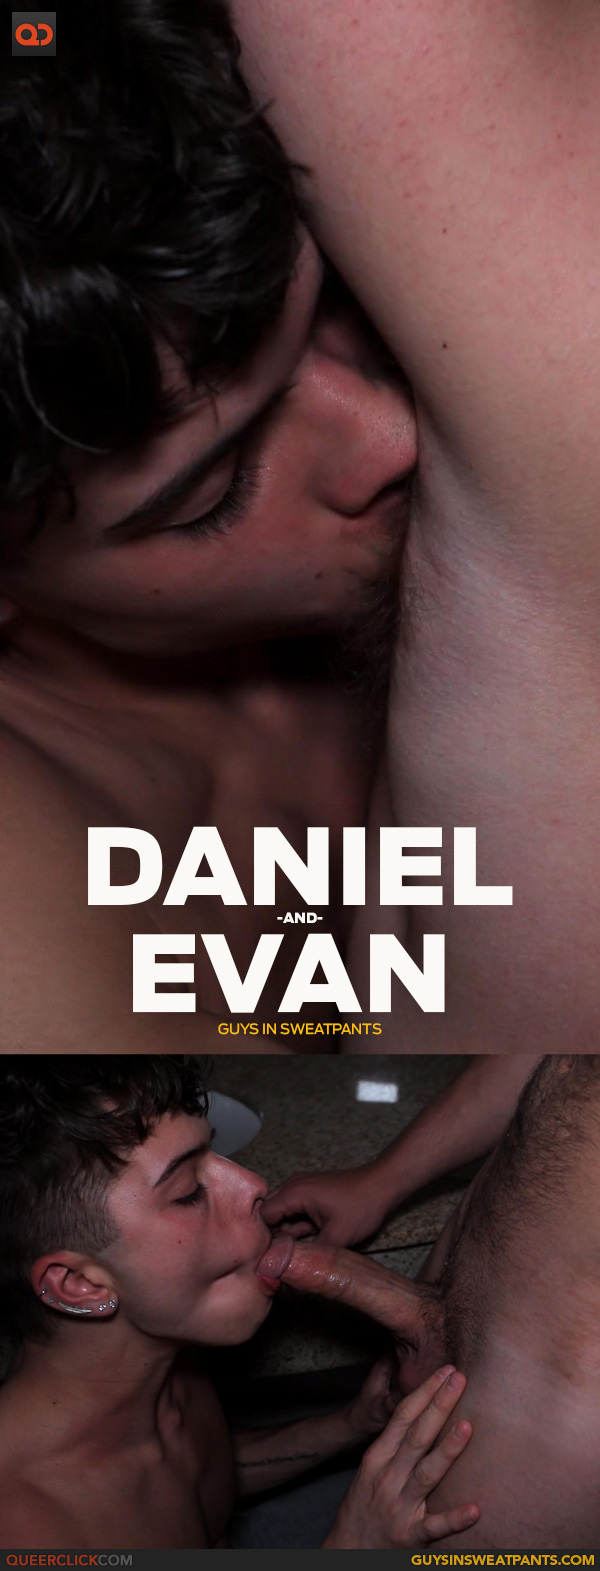 Guys in Sweatpants: Evan Knox and Daniel